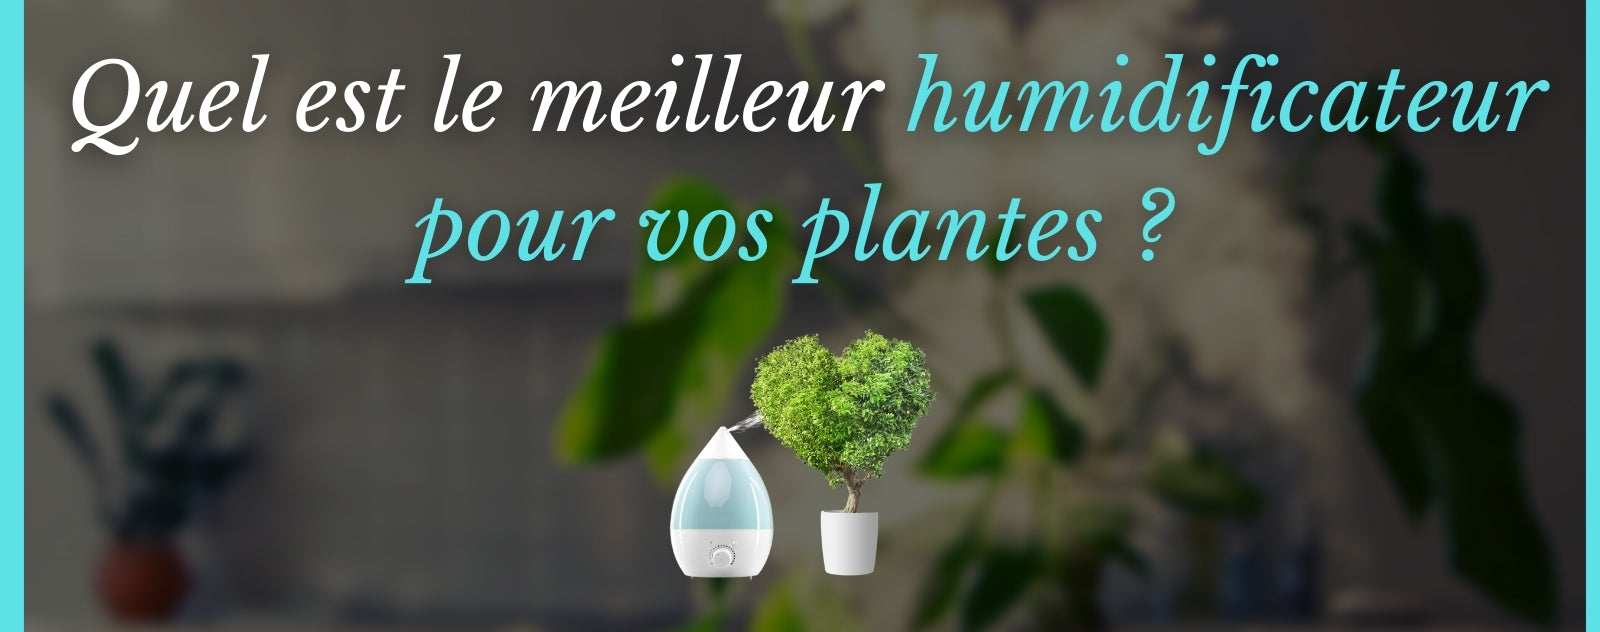 Quel est le meilleur humidificateur pour plante ? 3 modèles pour l